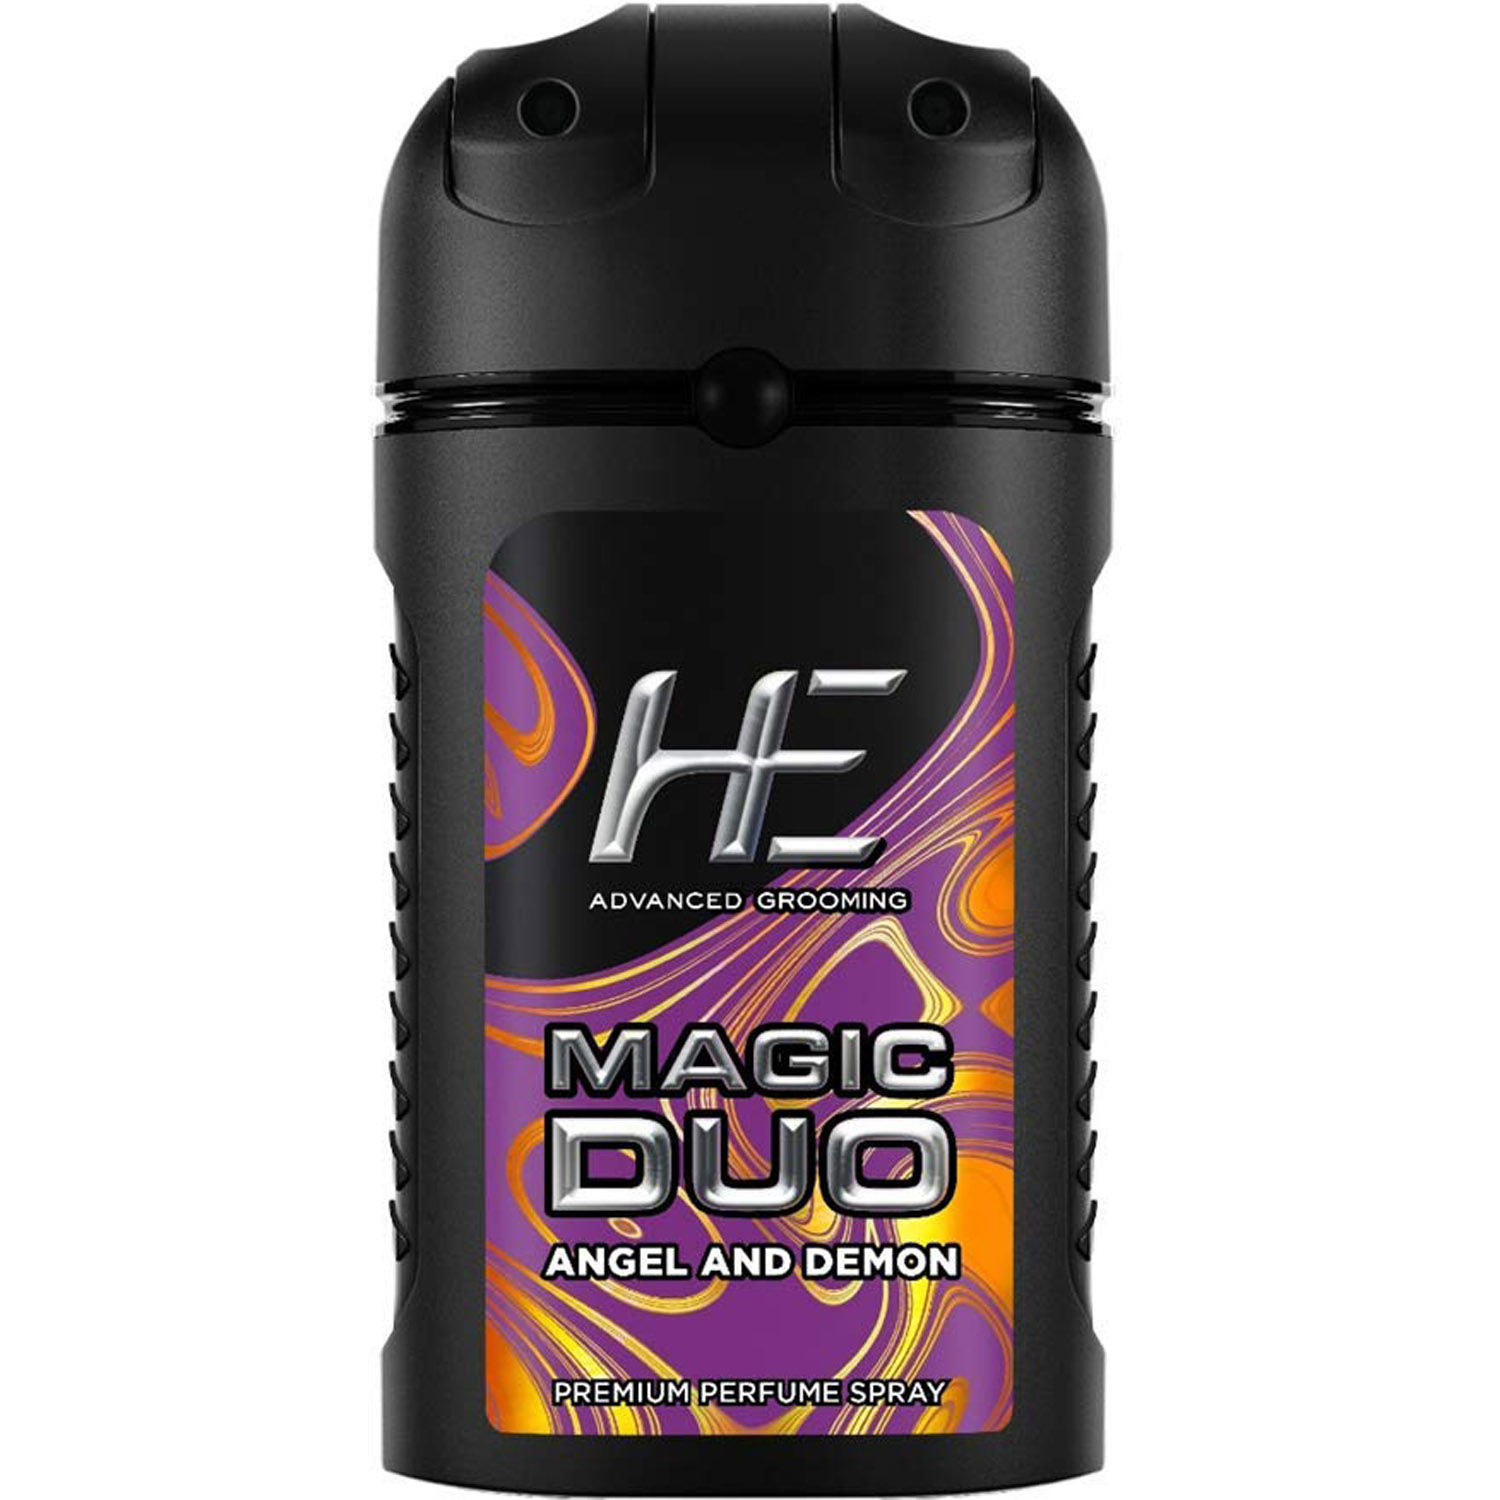 He Magic Duo Angel & Demon Premium Perfume Body Spray, 100 ml, Pack of 1 